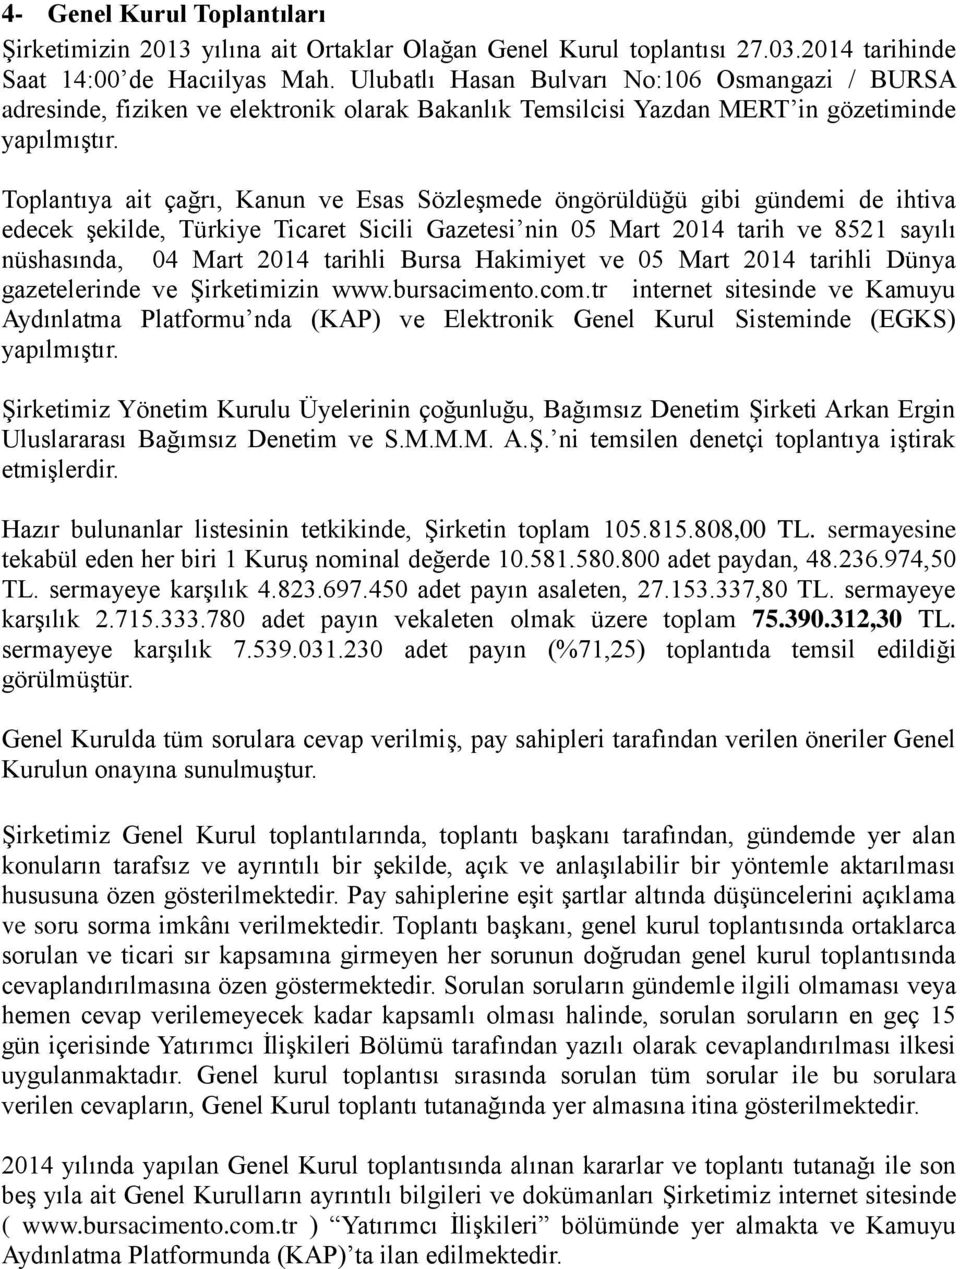 Toplantıya ait çağrı, Kanun ve Esas Sözleşmede öngörüldüğü gibi gündemi de ihtiva edecek şekilde, Türkiye Ticaret Sicili Gazetesi nin 05 Mart 2014 tarih ve 8521 sayılı nüshasında, 04 Mart 2014